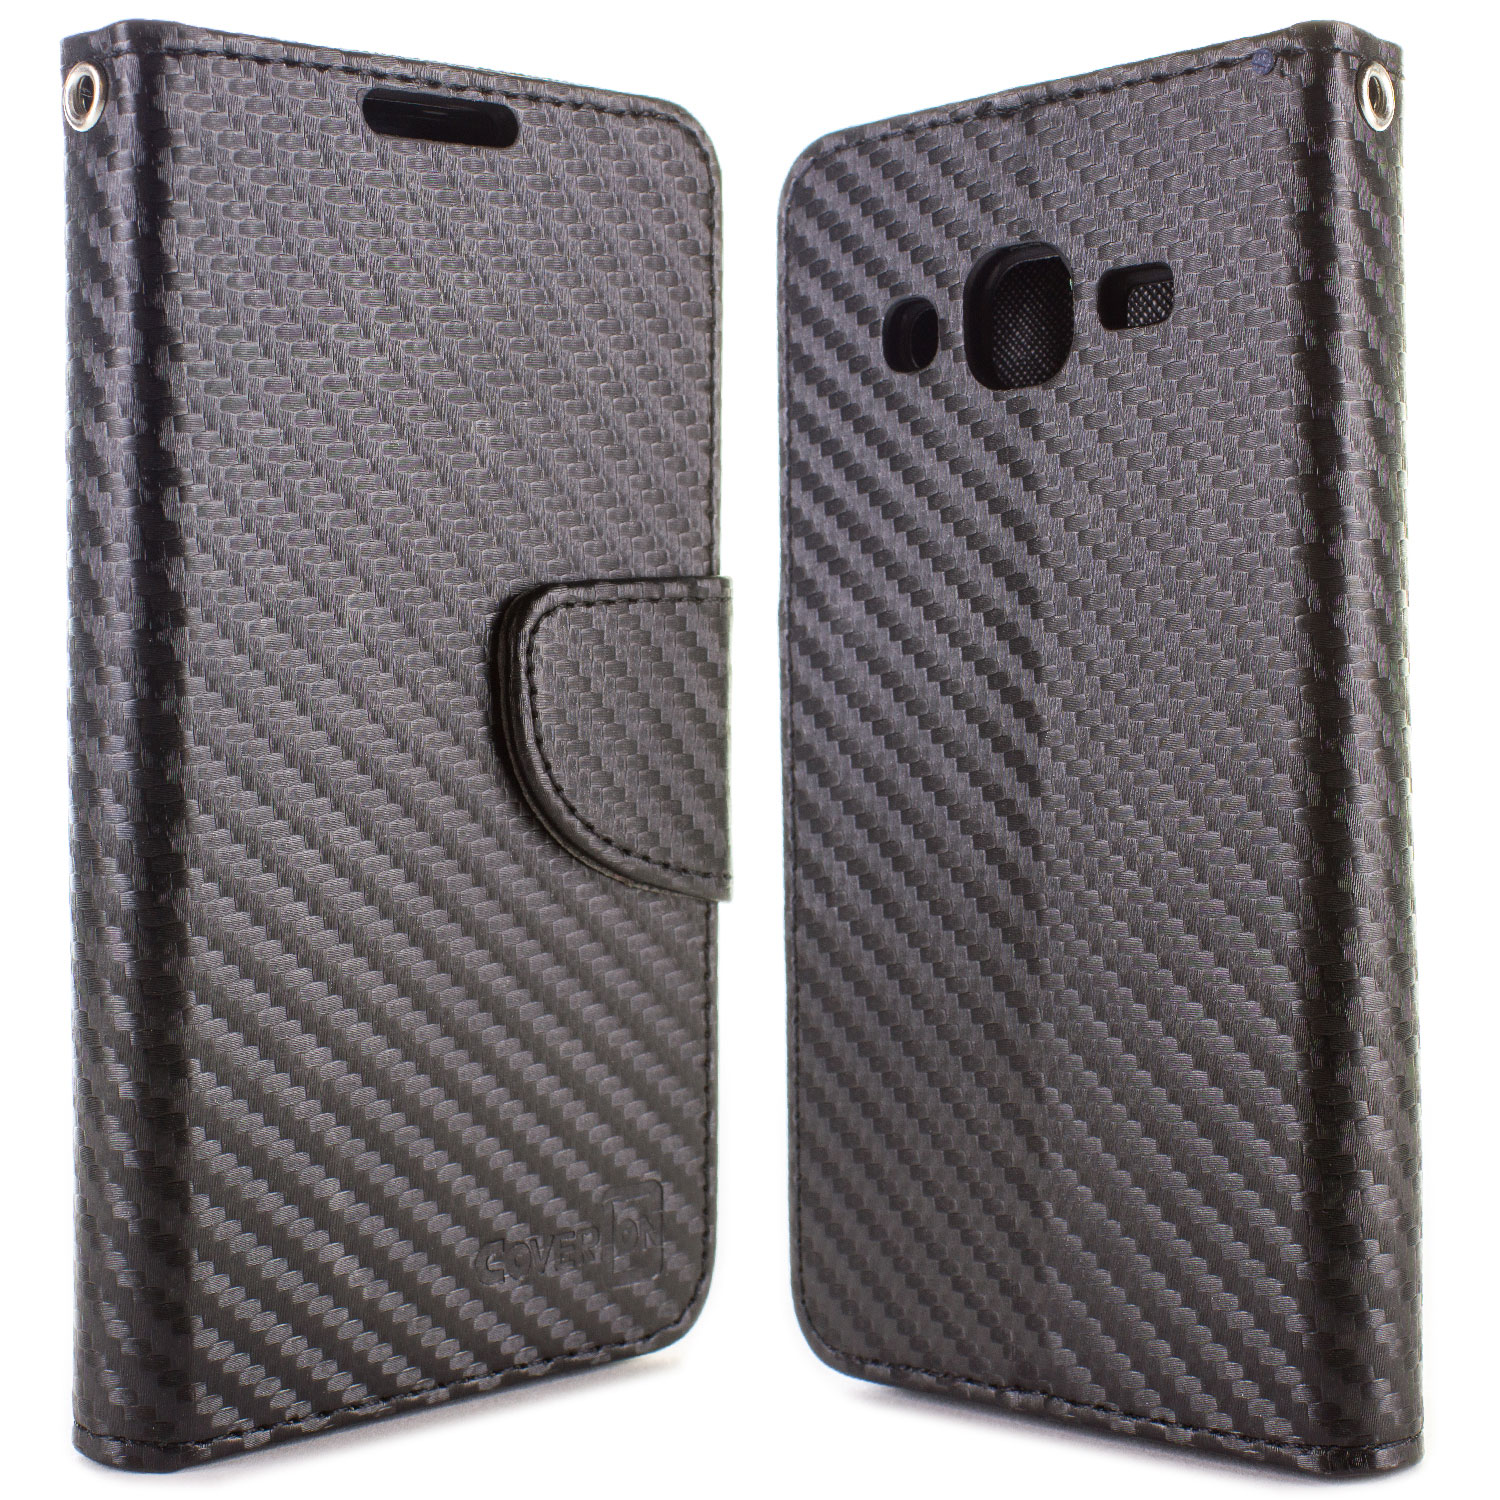 For Samsung Galaxy J2 15 Sm J0 Wallet Case Black Carbon Fiber Design Ebay